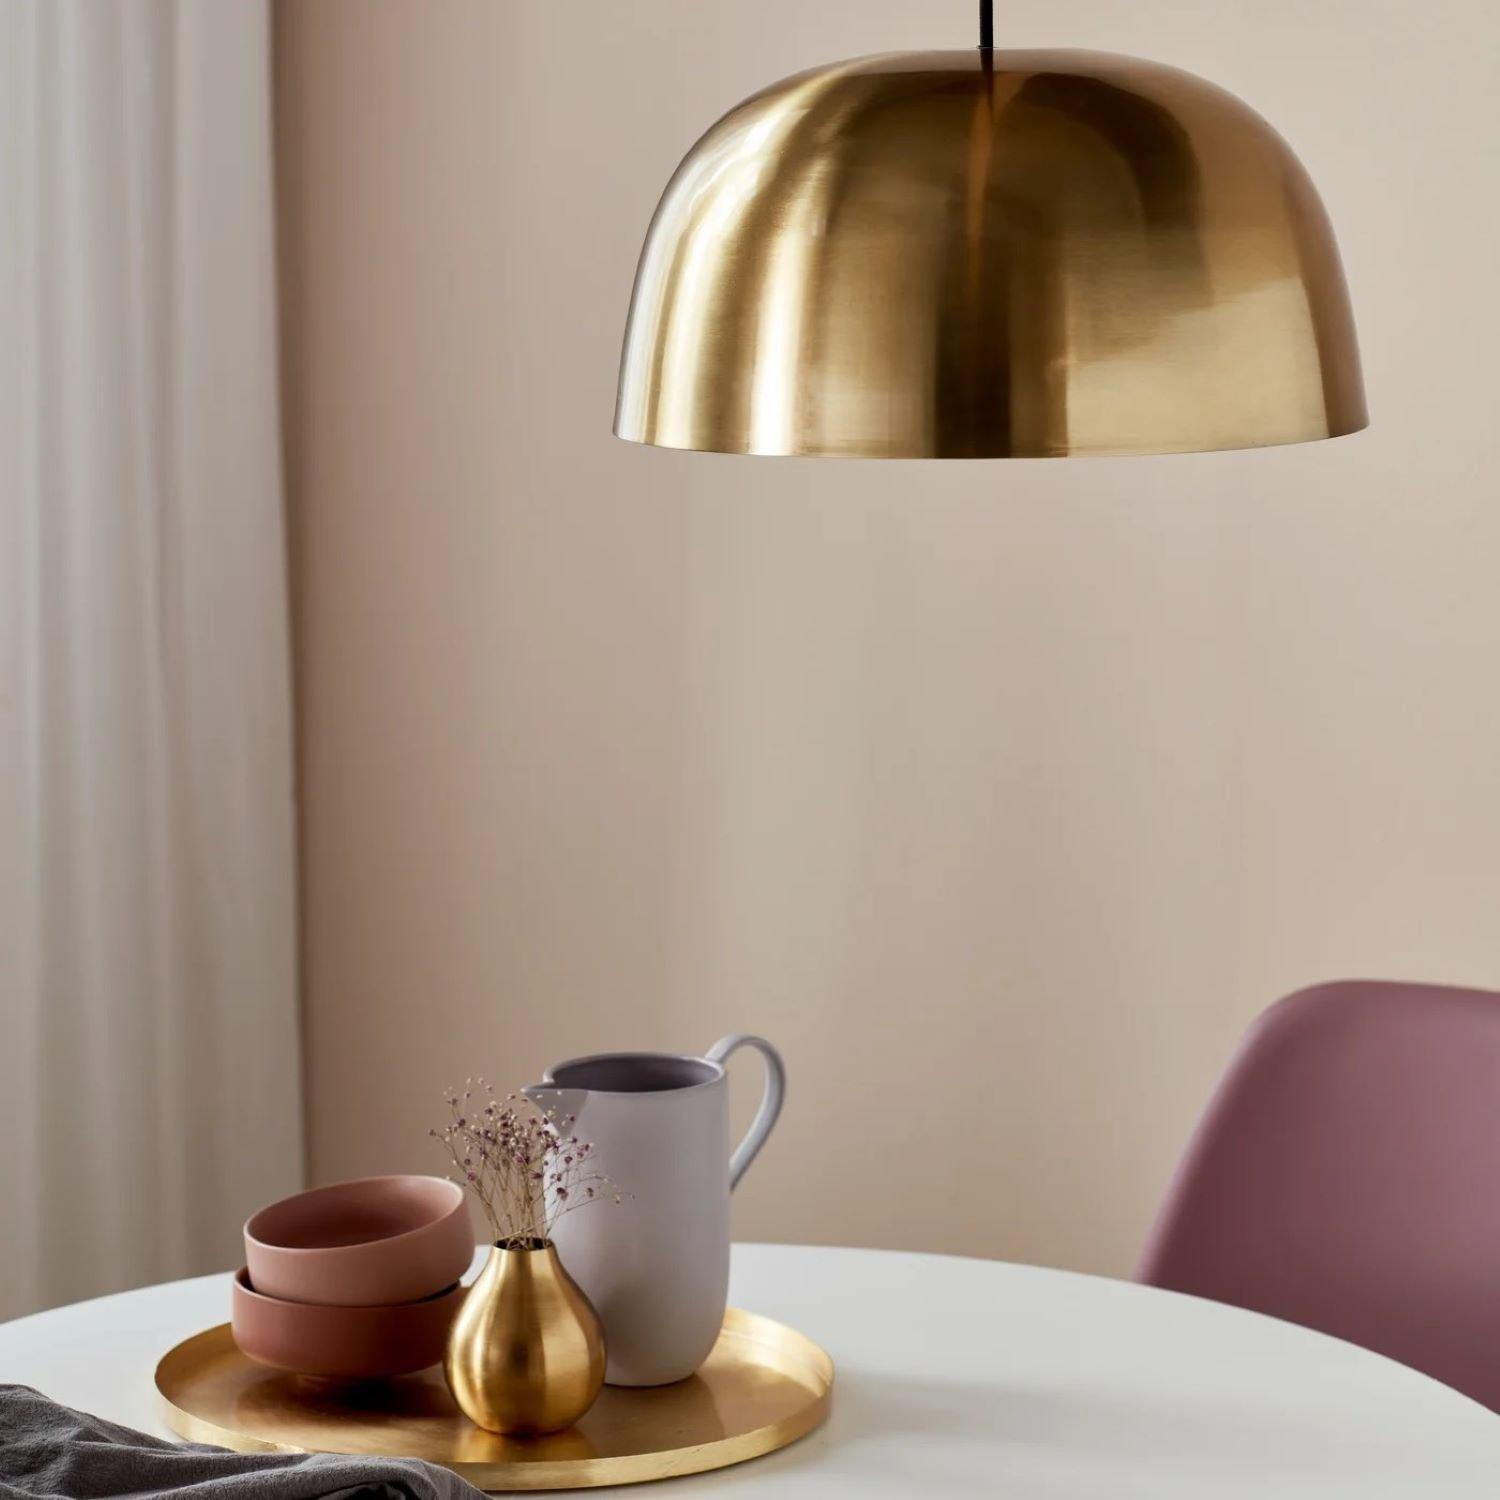 Cera Indoor Living Dining Metal Pendant Ceiling Light in Brass (Diam) 21.5cm - image 1